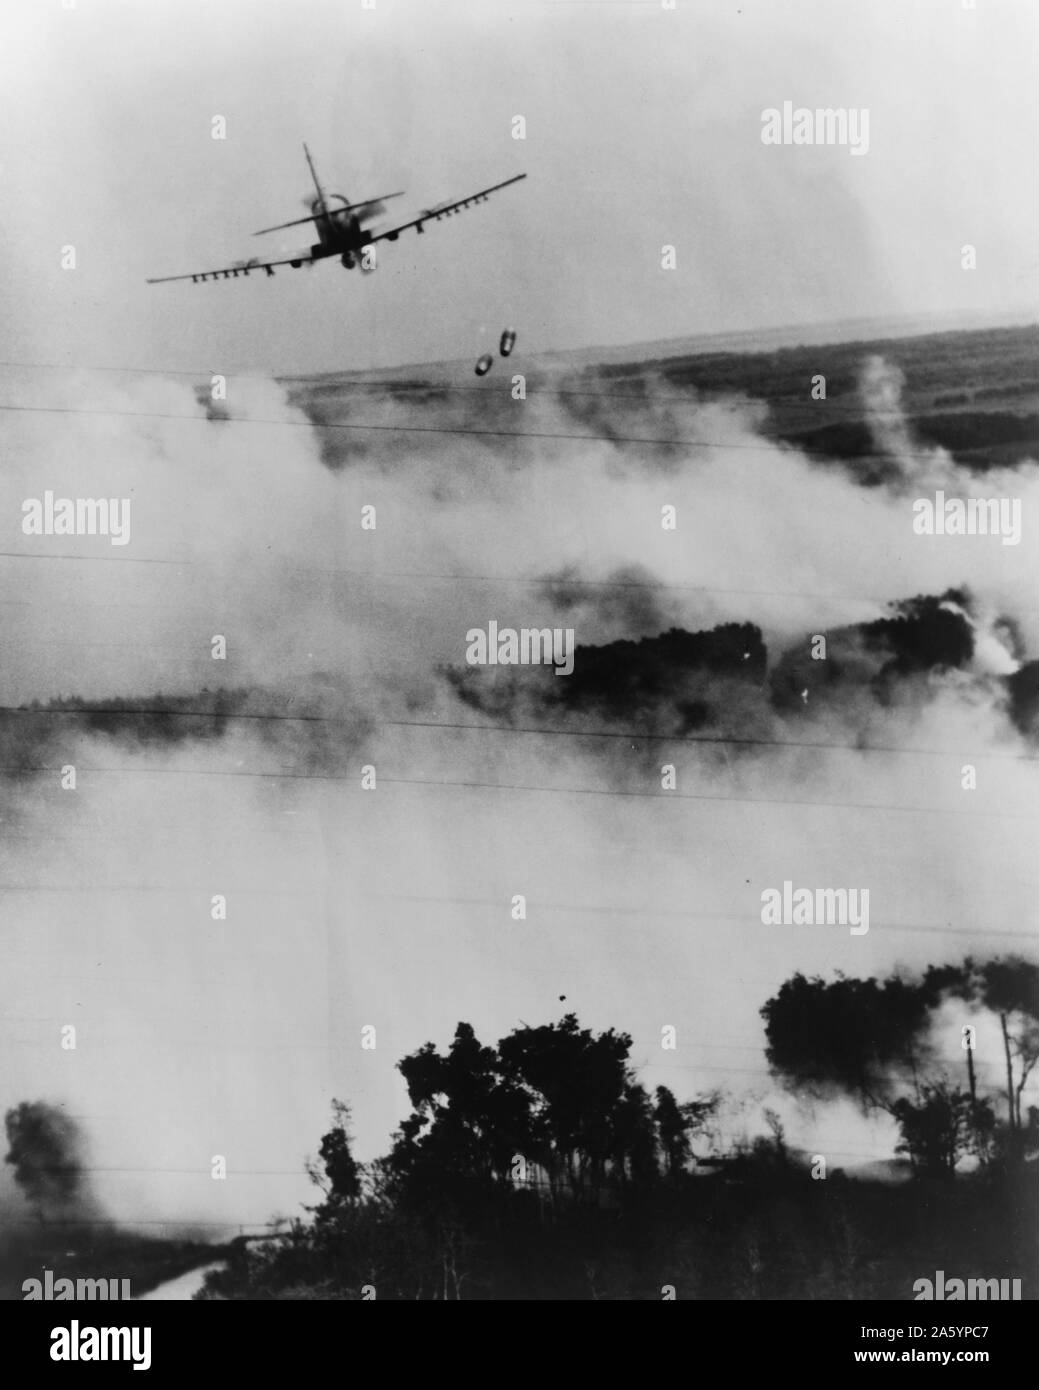 Photographie d'un raid aérien contre un repaire Vietcong près de Cantho, Vietnam du Sud. Bombe d'une armée de l'air vietnamienne A-1E Sky raider. Daté 1967 Banque D'Images